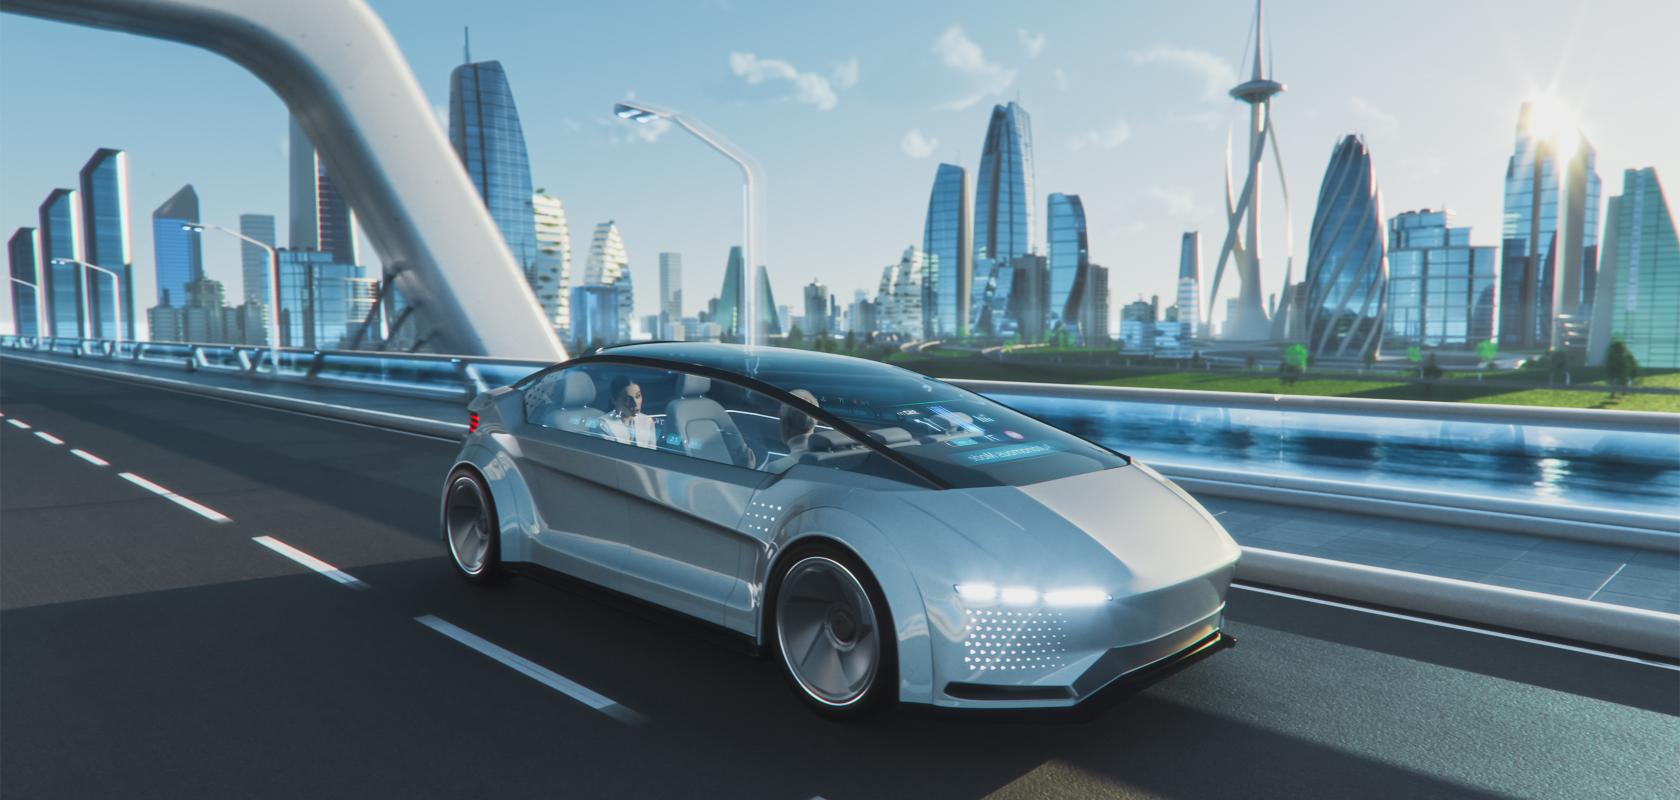 Autonomous vehicle development